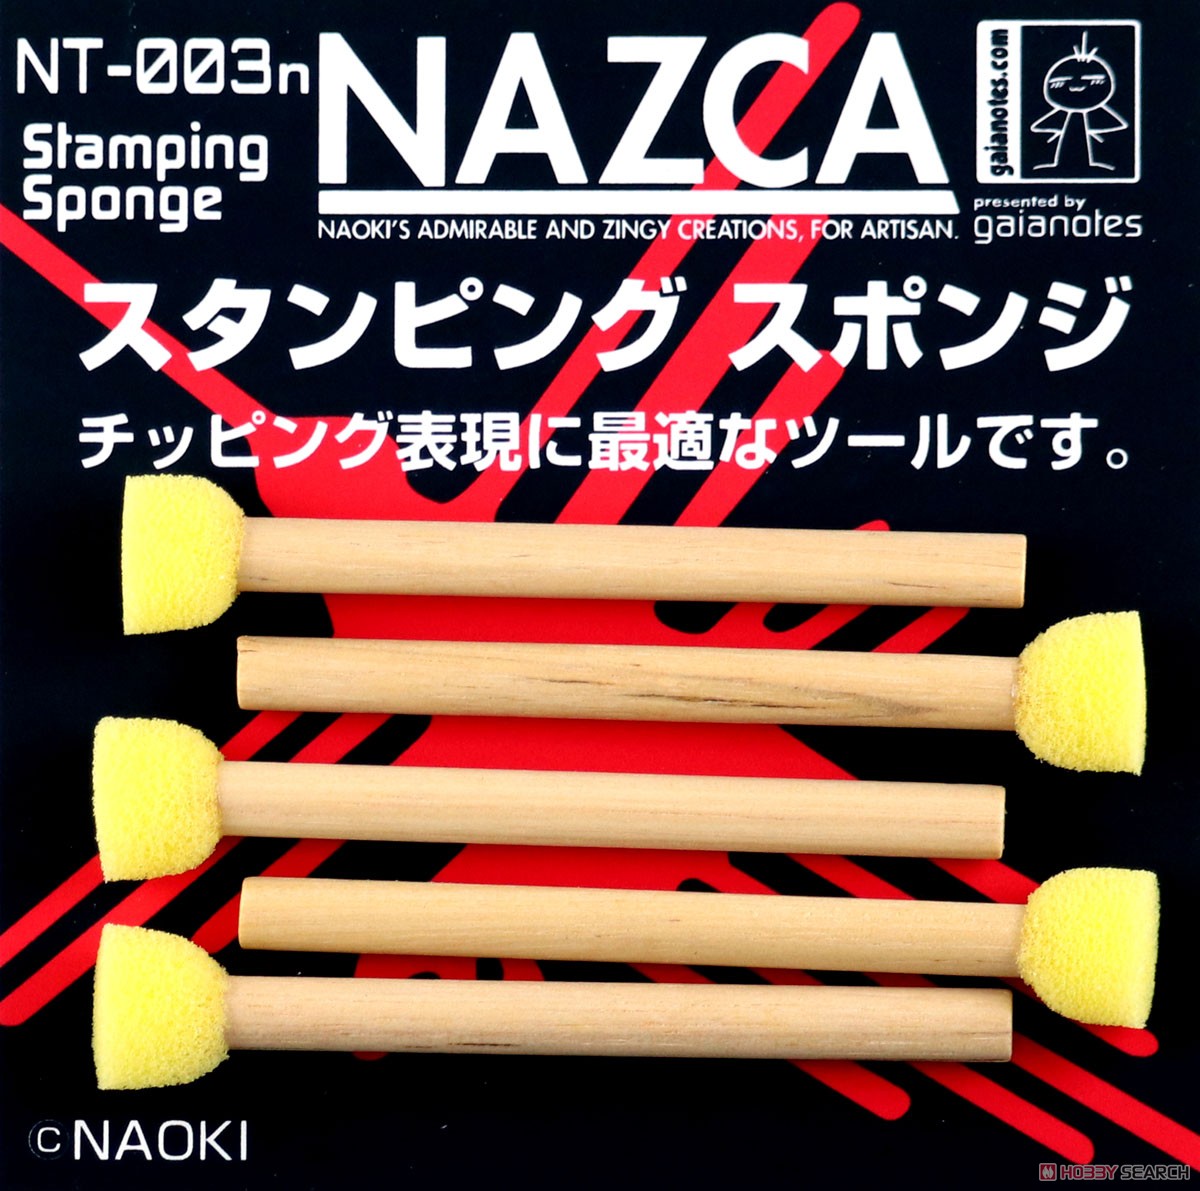 NT-003n スタンピングスポンジ (5本入り) (工具) (塗料) 商品画像1